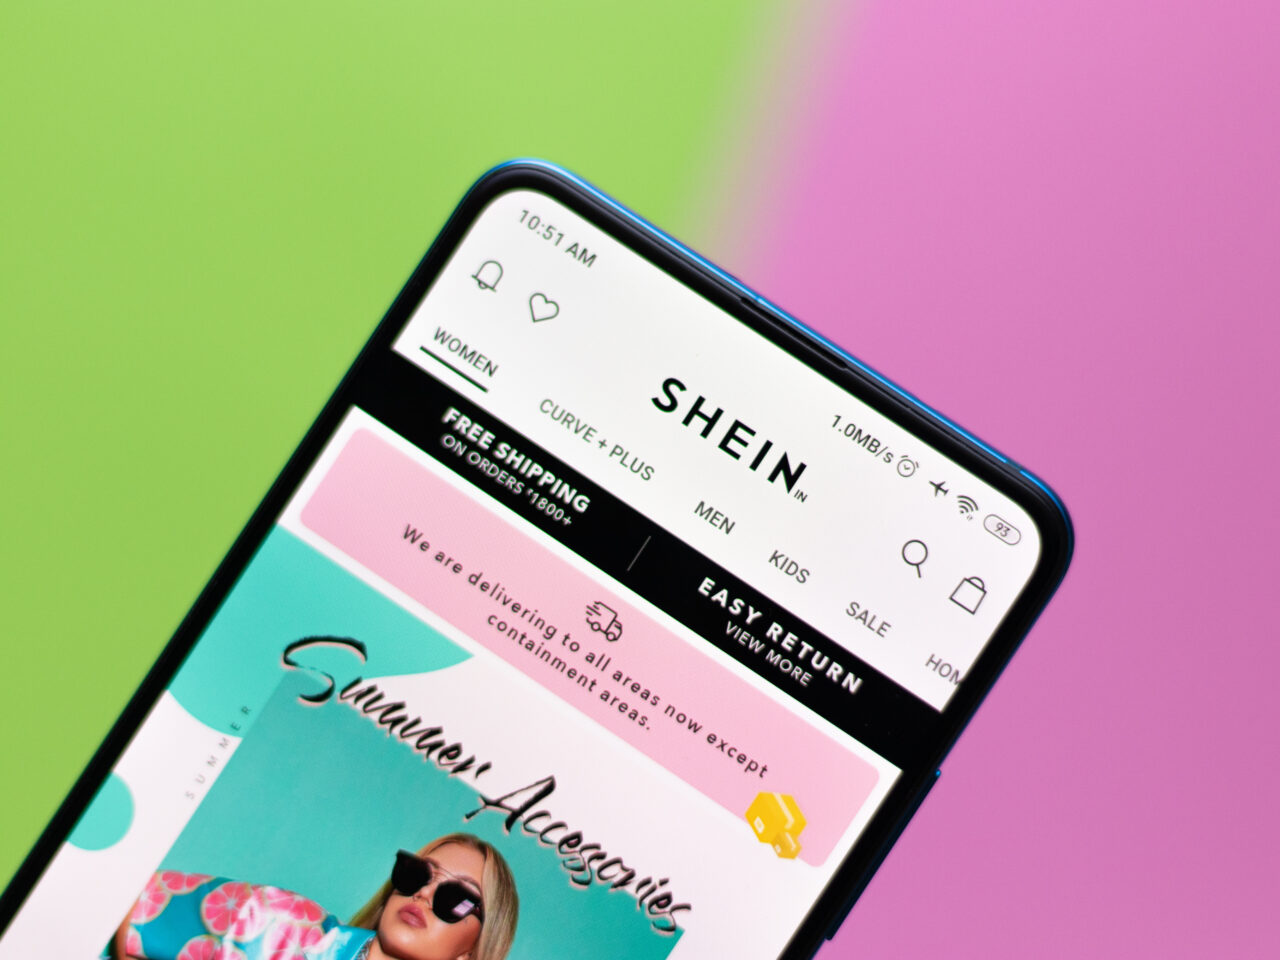 Shein opinie. Smartfon z otwartą aplikacją sklepu SHEIN na ekranie, wyświetlającym reklamę akcesoriów letnich z ikoną kobiety w okularach przeciwsłonecznych na kolorowym tle zielono-różowym.